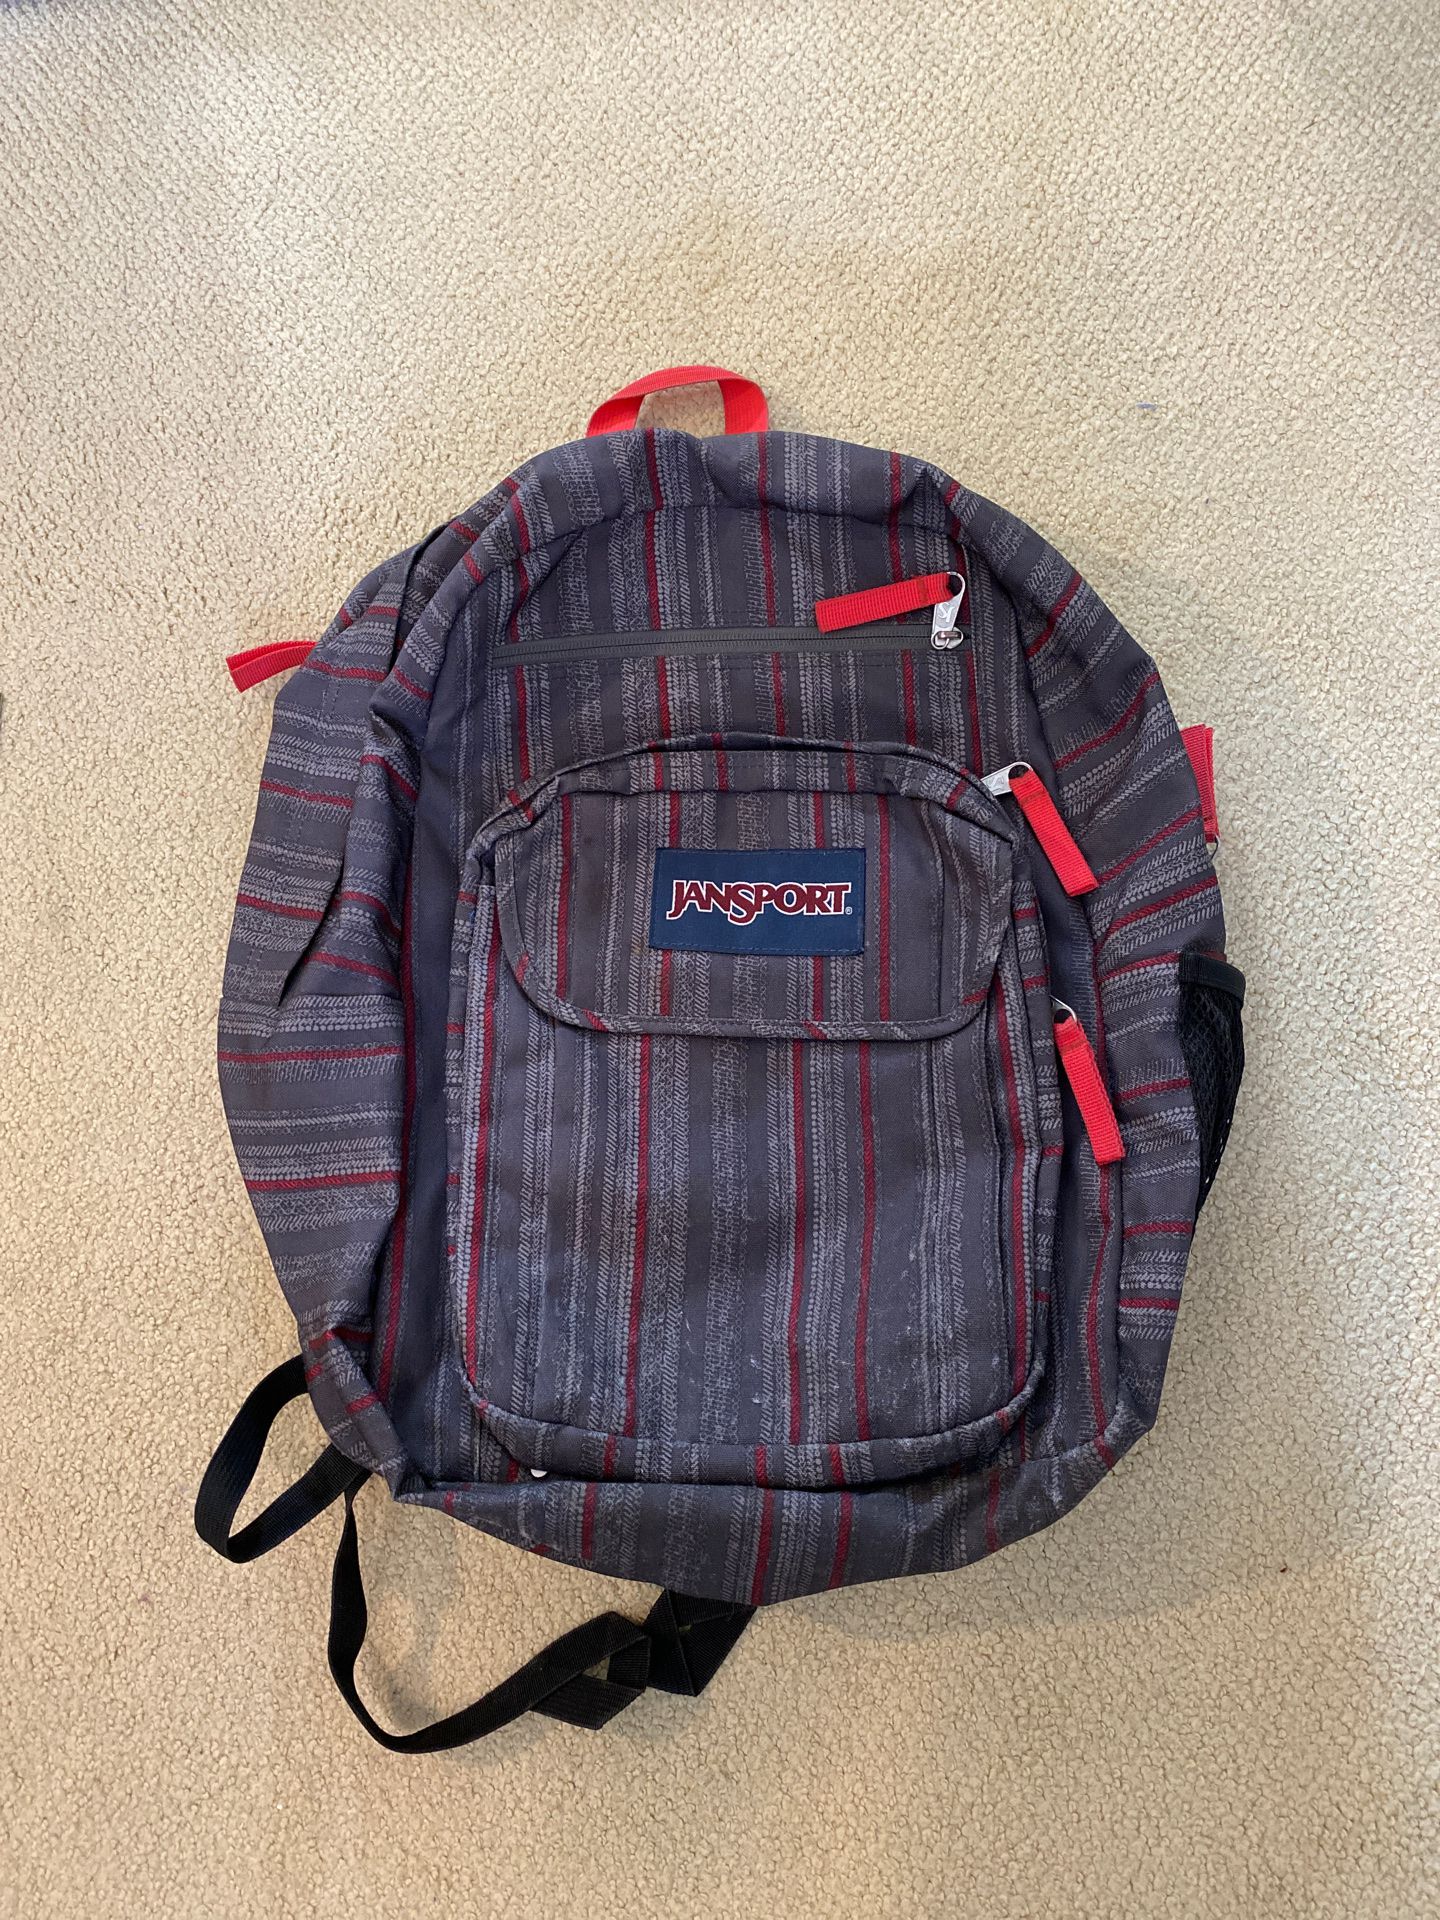 Jansport Digital Student backpack